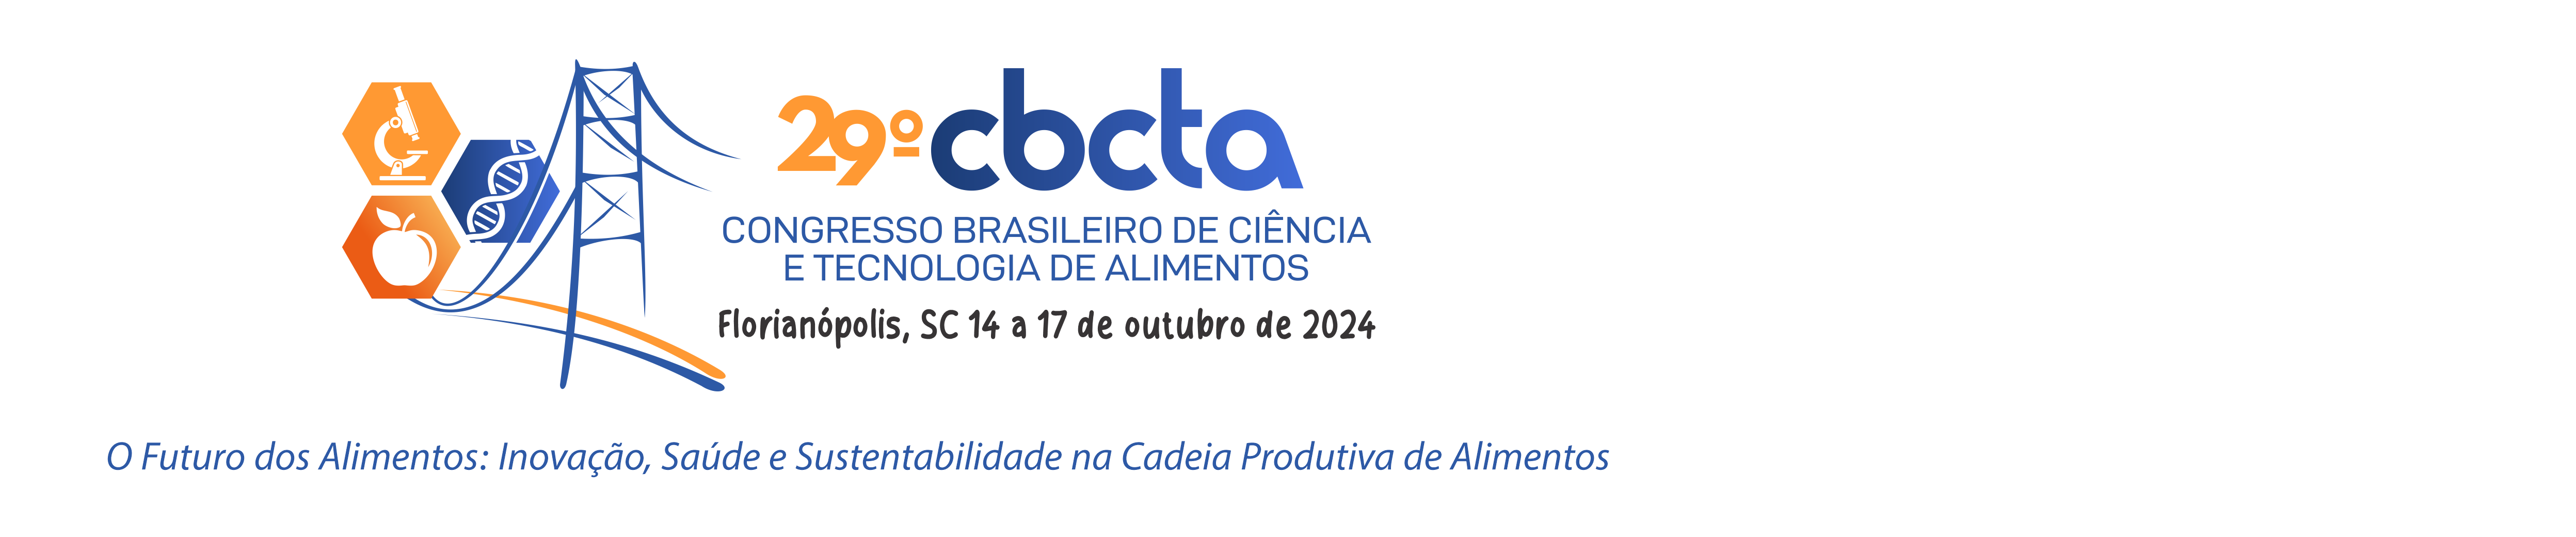 29º Congresso Brasileiro de Ciência e Tecnologia de Alimentos